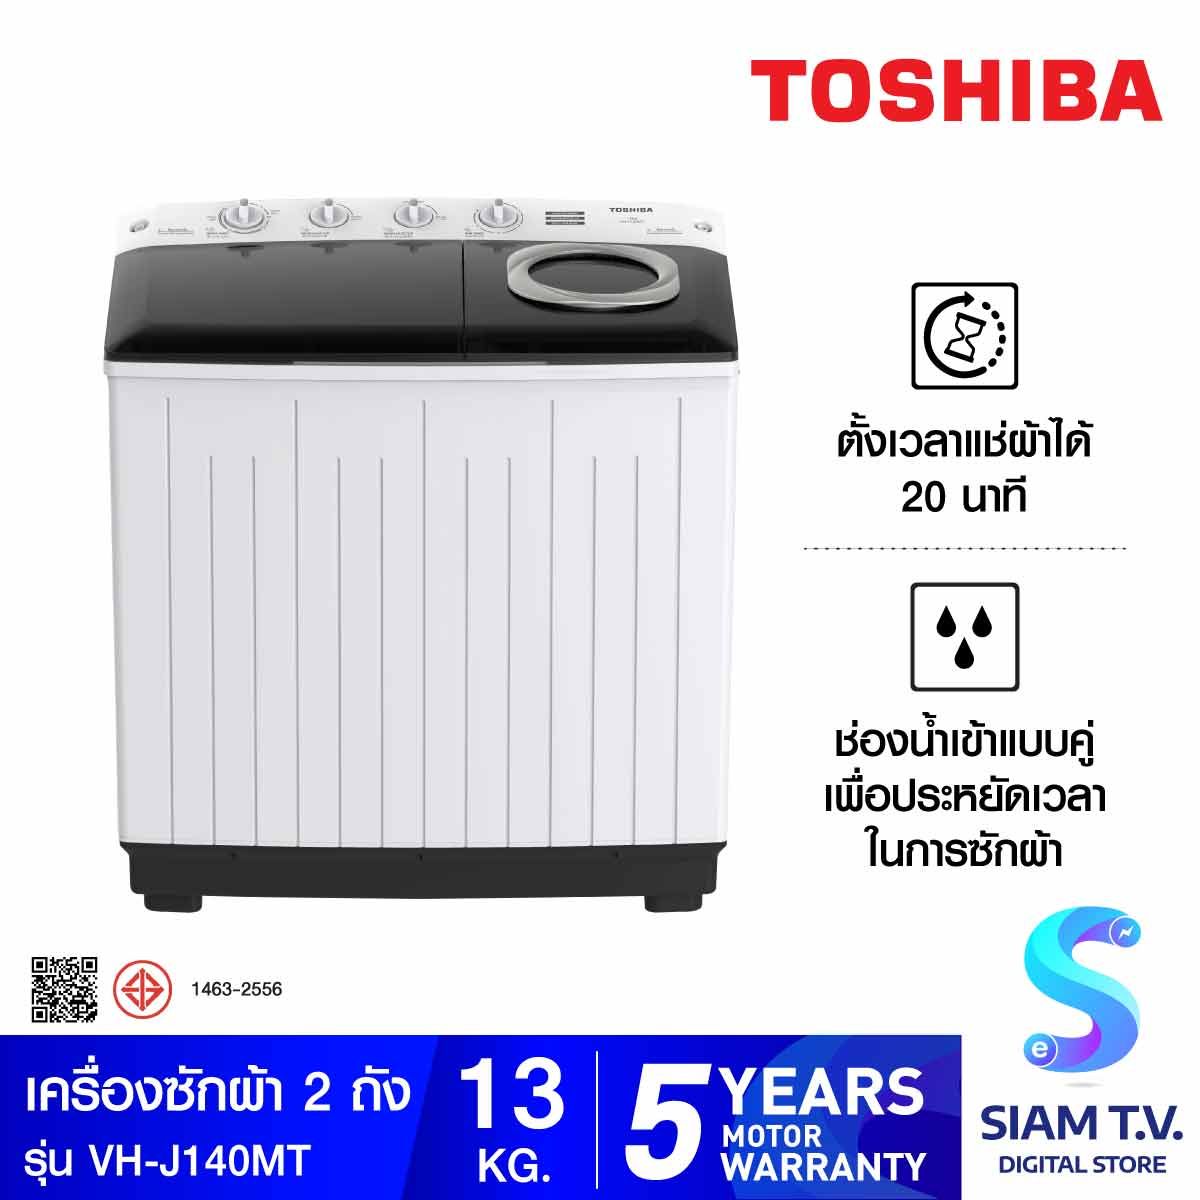 TOSHIBA เครื่องซักผ้า 2 ถัง 13Kg สีขาว รุ่น VH-J140MT